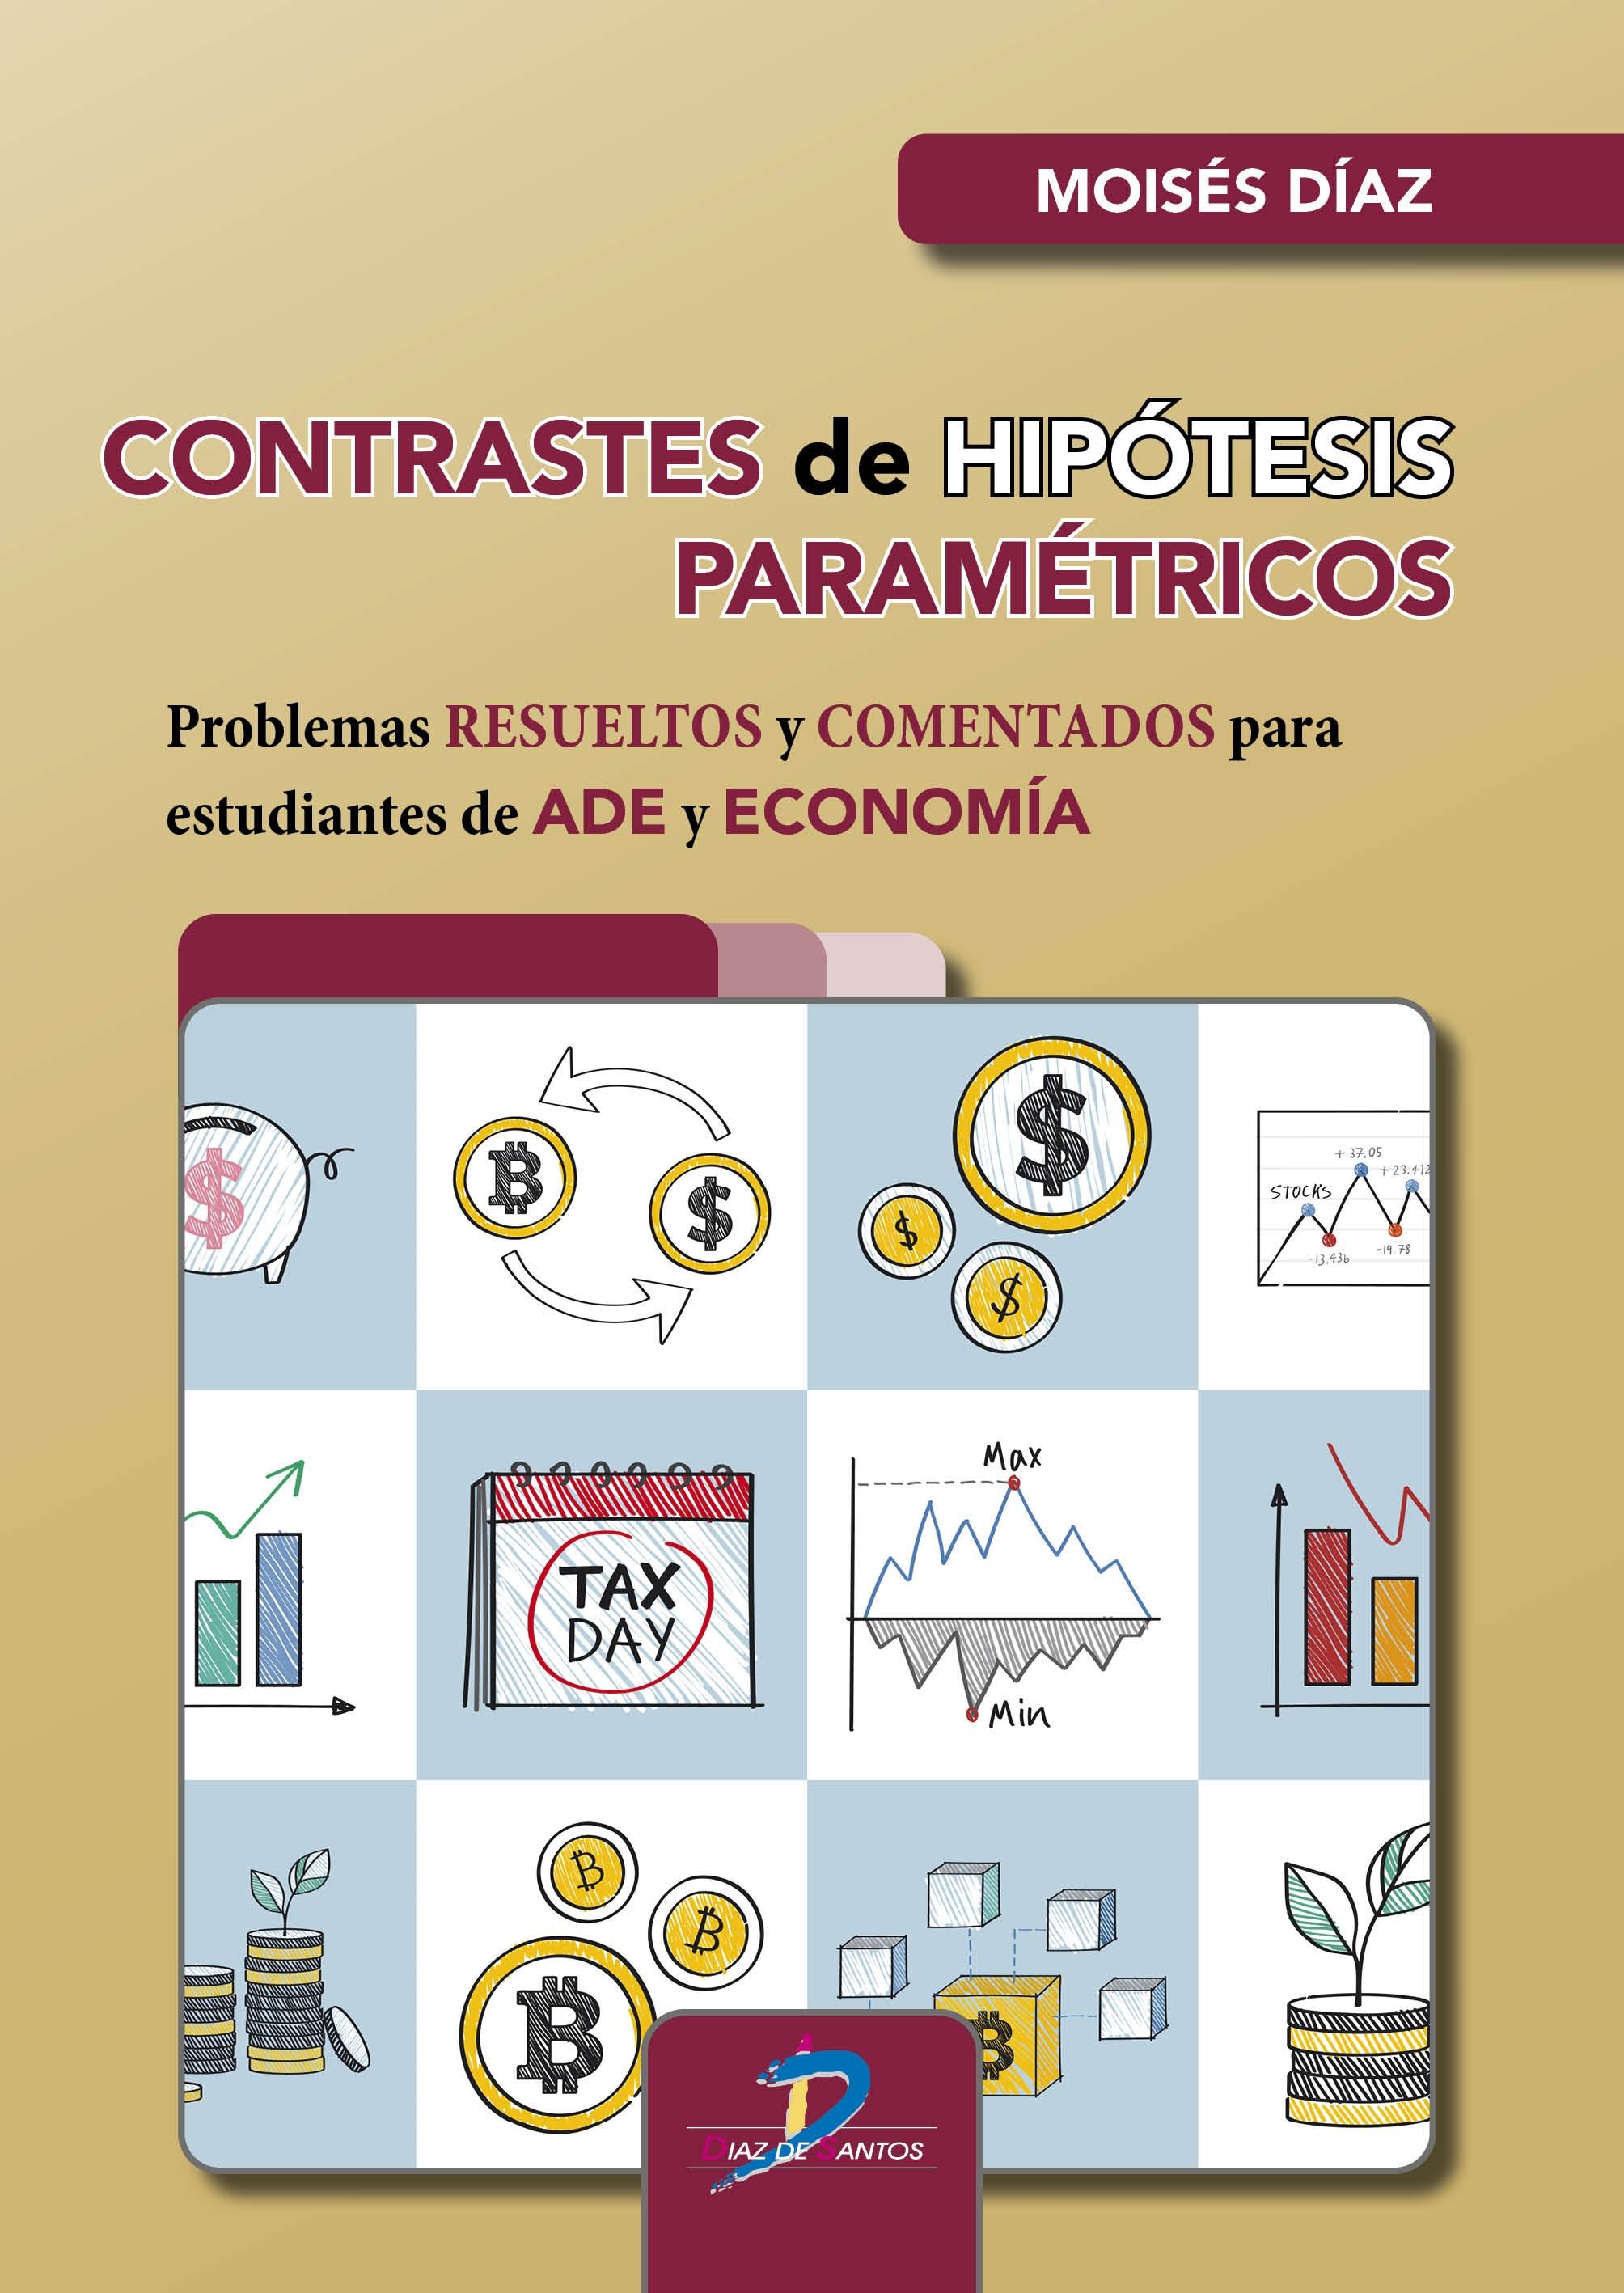 Contrastes de hipótesis paramétricos "Problemas resueltos y comentados para estudiantes de ADE y Economía"